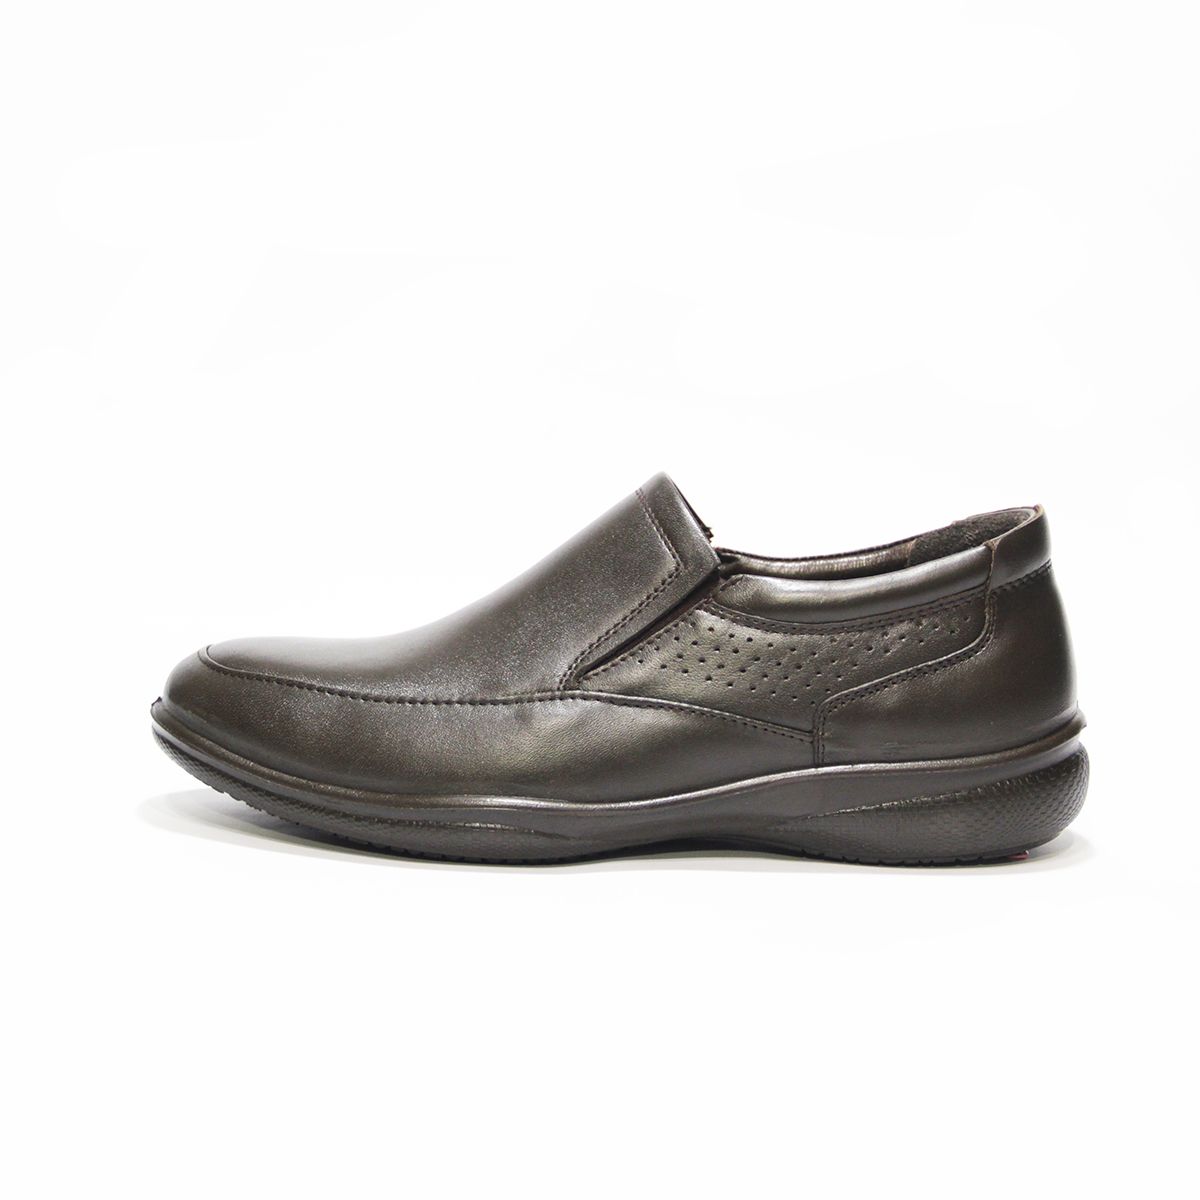 کفش روزمره مردانه فرزین کد TKB 0021 رنگ قهوه ای -  - 1